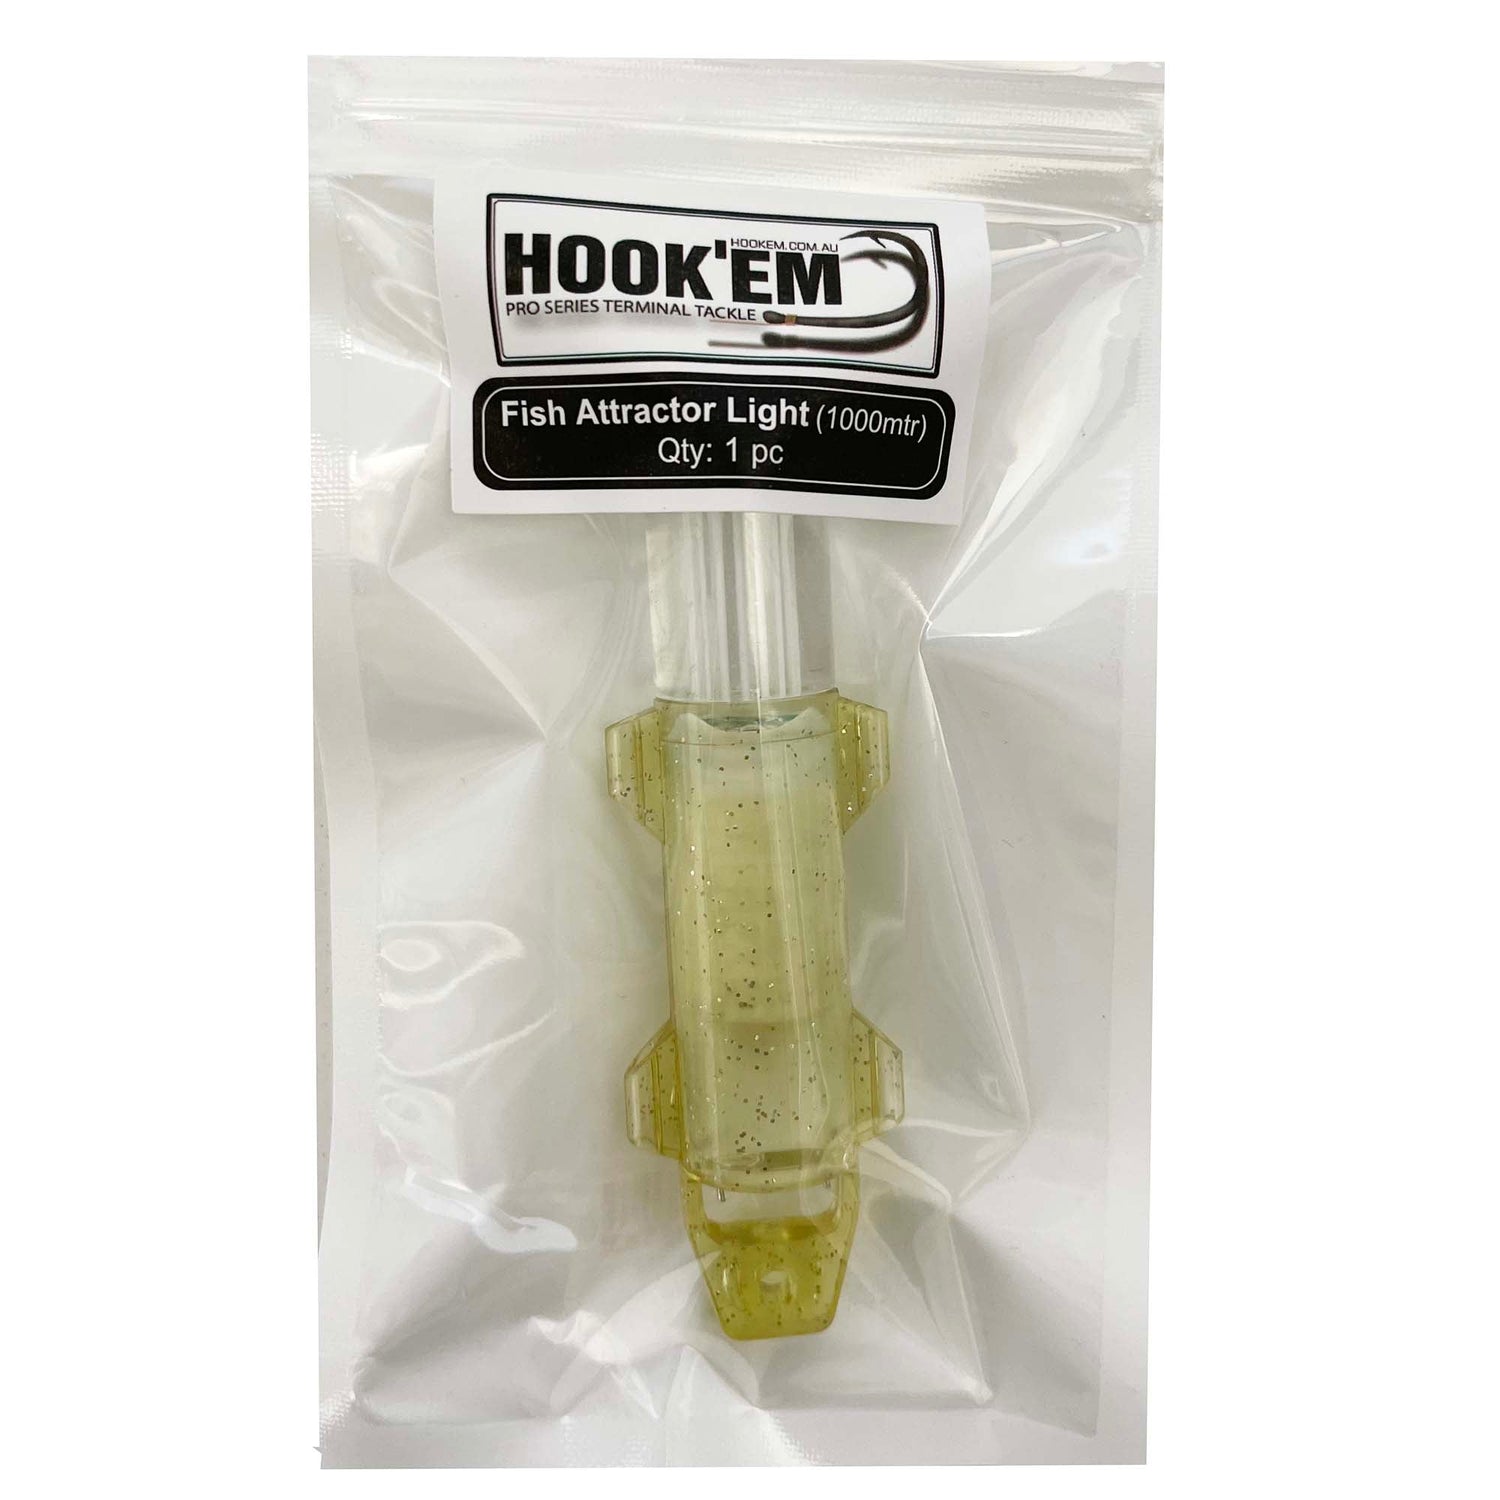 Hookem Fish Attractor Light – Fishing Station